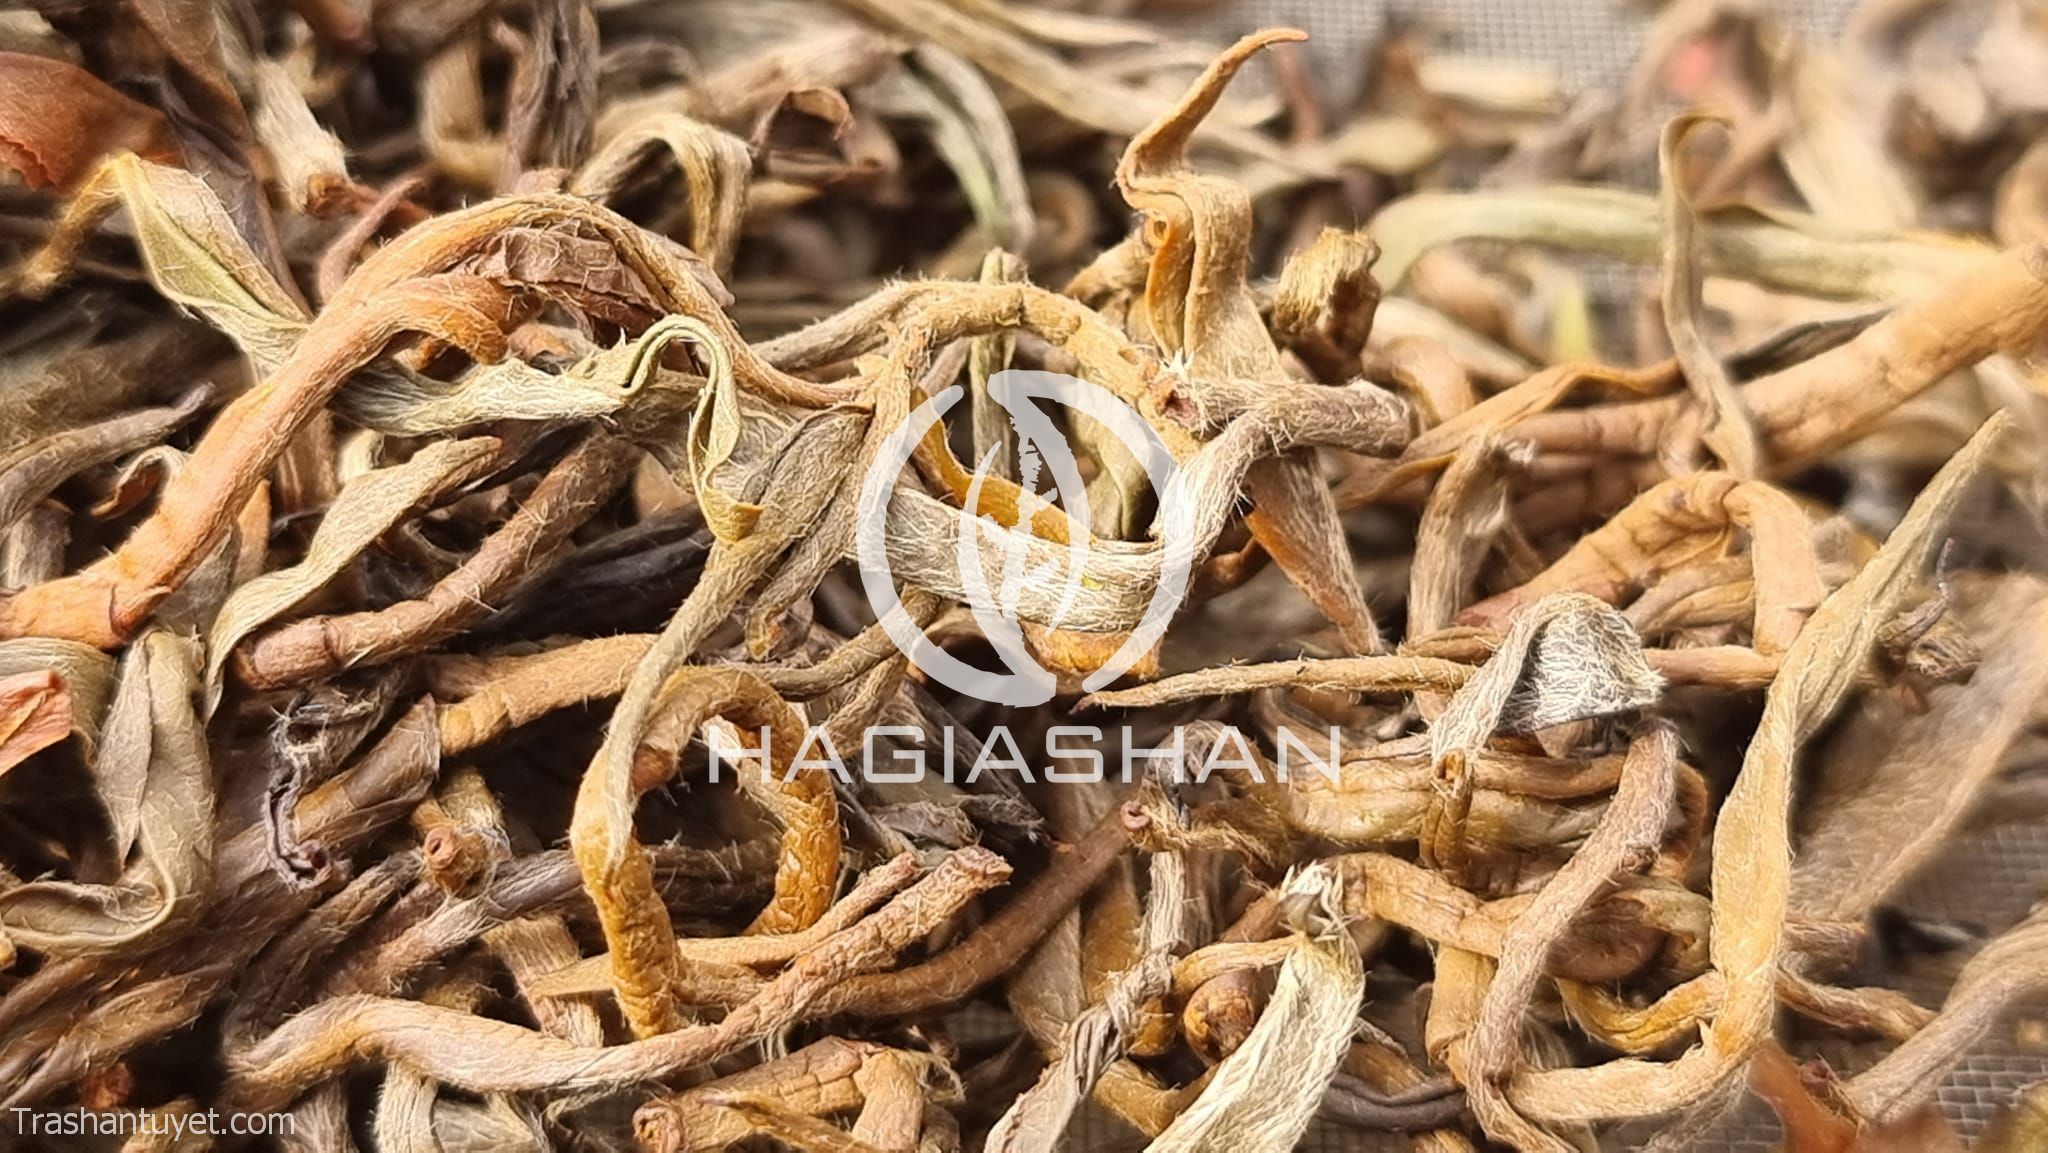 Hồng trà HAGIASHAN được chế biến từ trà shan cổ thụ trên 300 năm tuổi.